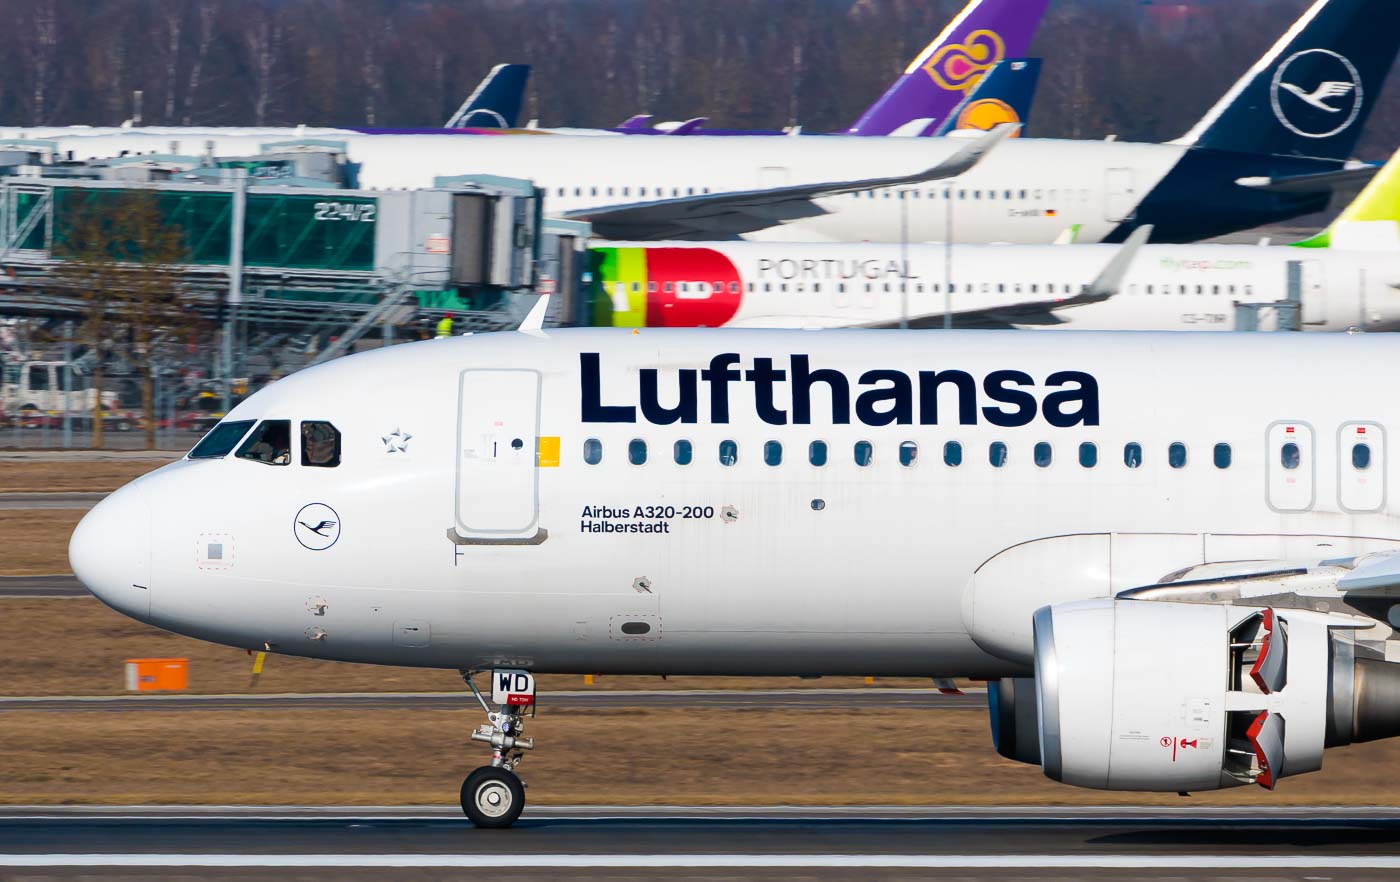 D-AIWD - Lufthansa Airbus A320